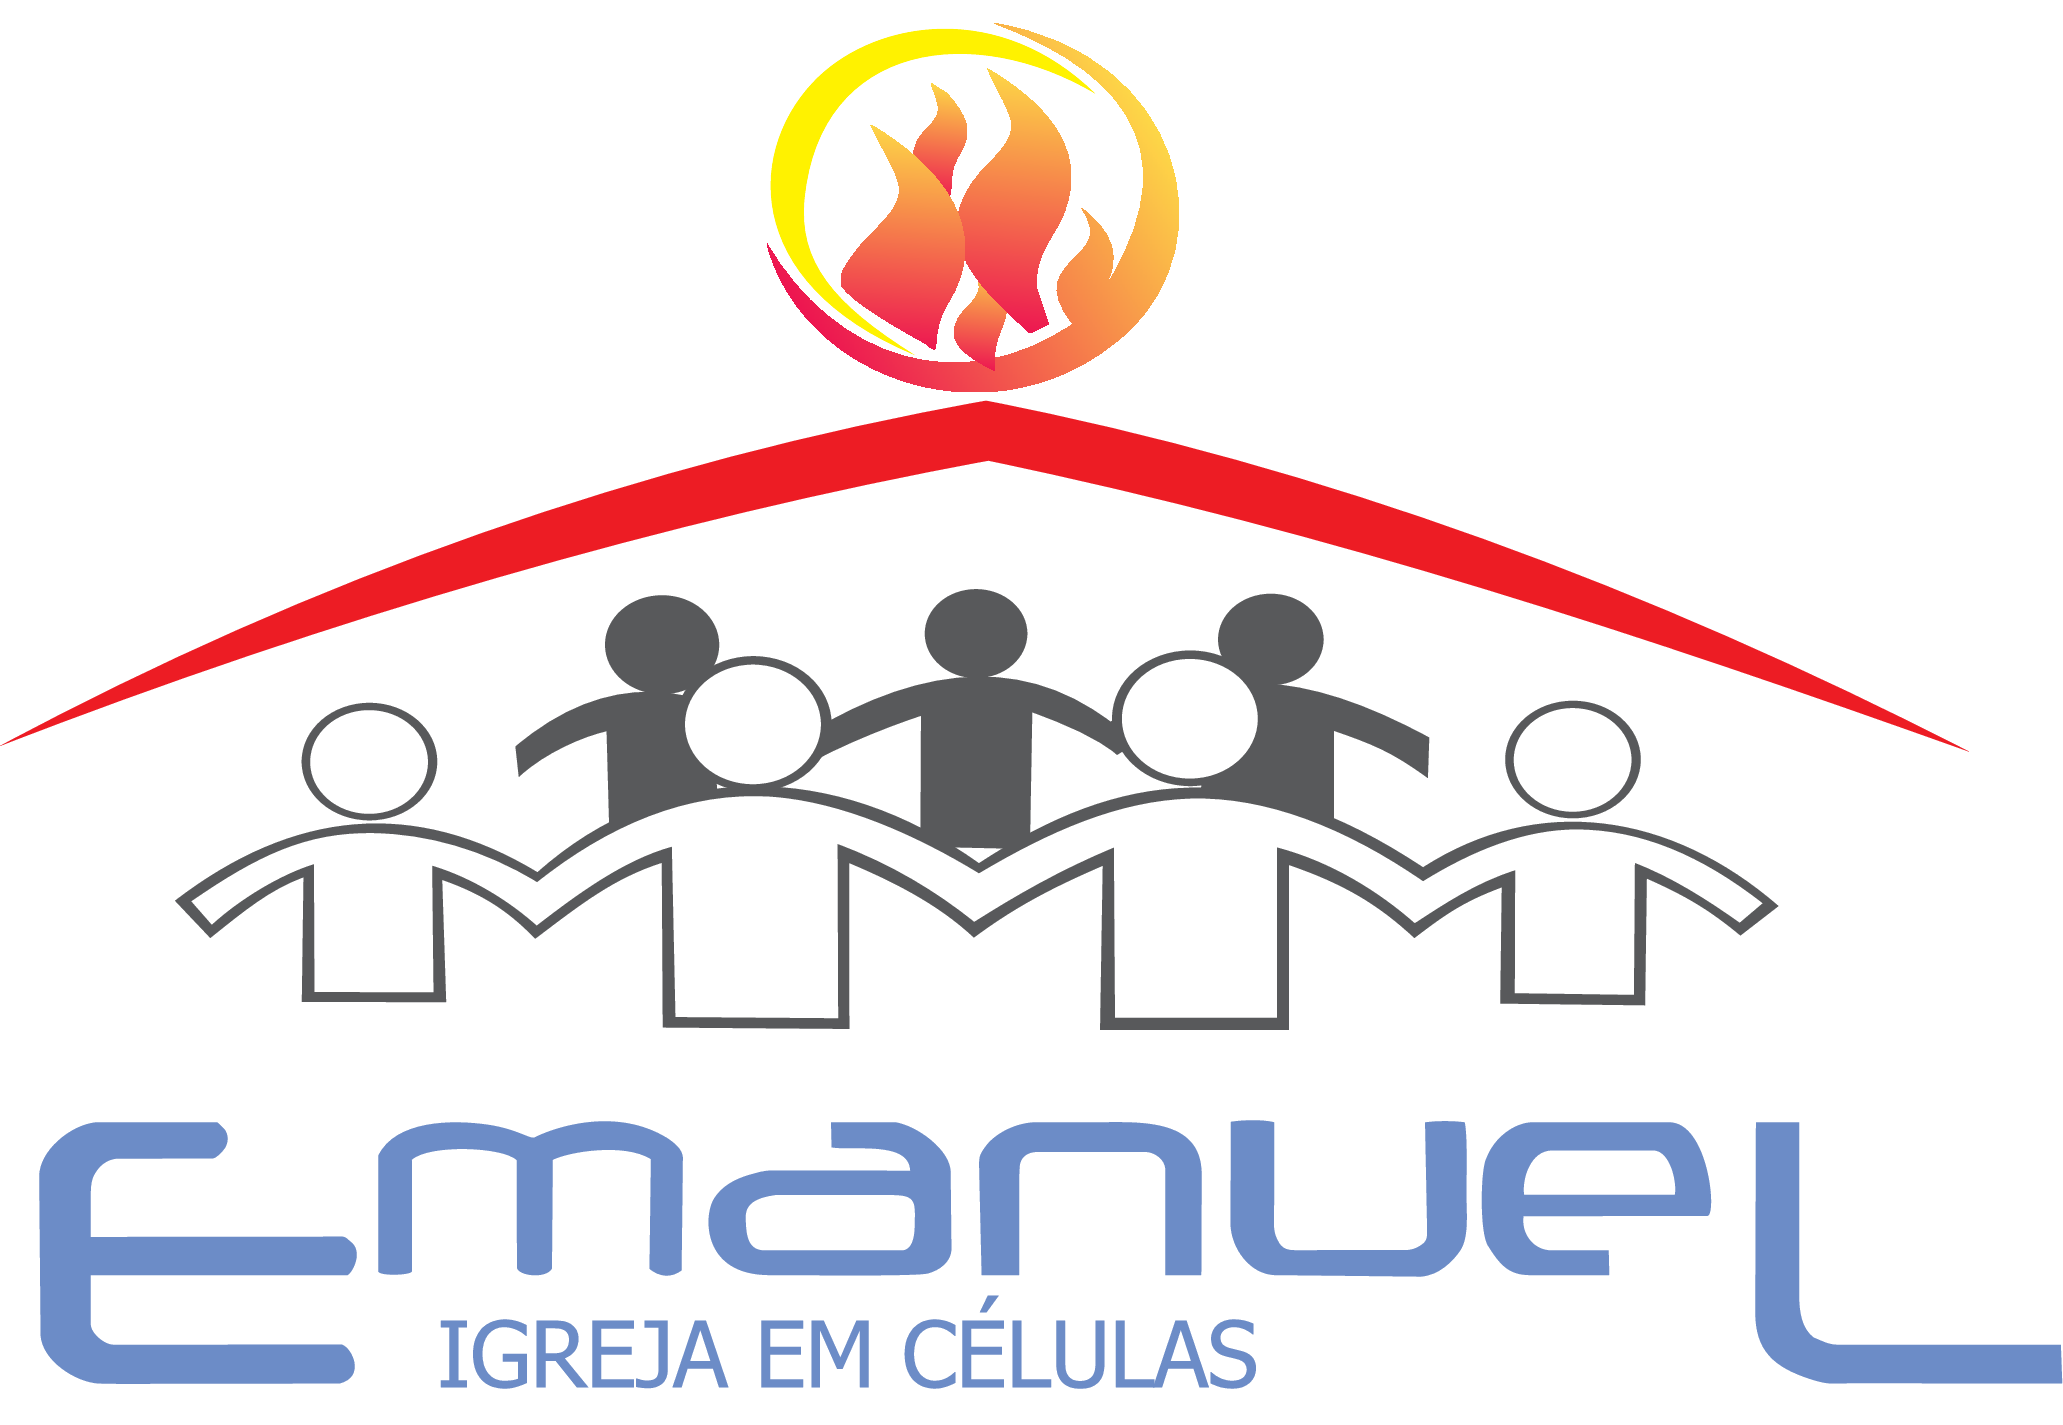 EMANUEL IGREJA EM CÉLULAS Logo